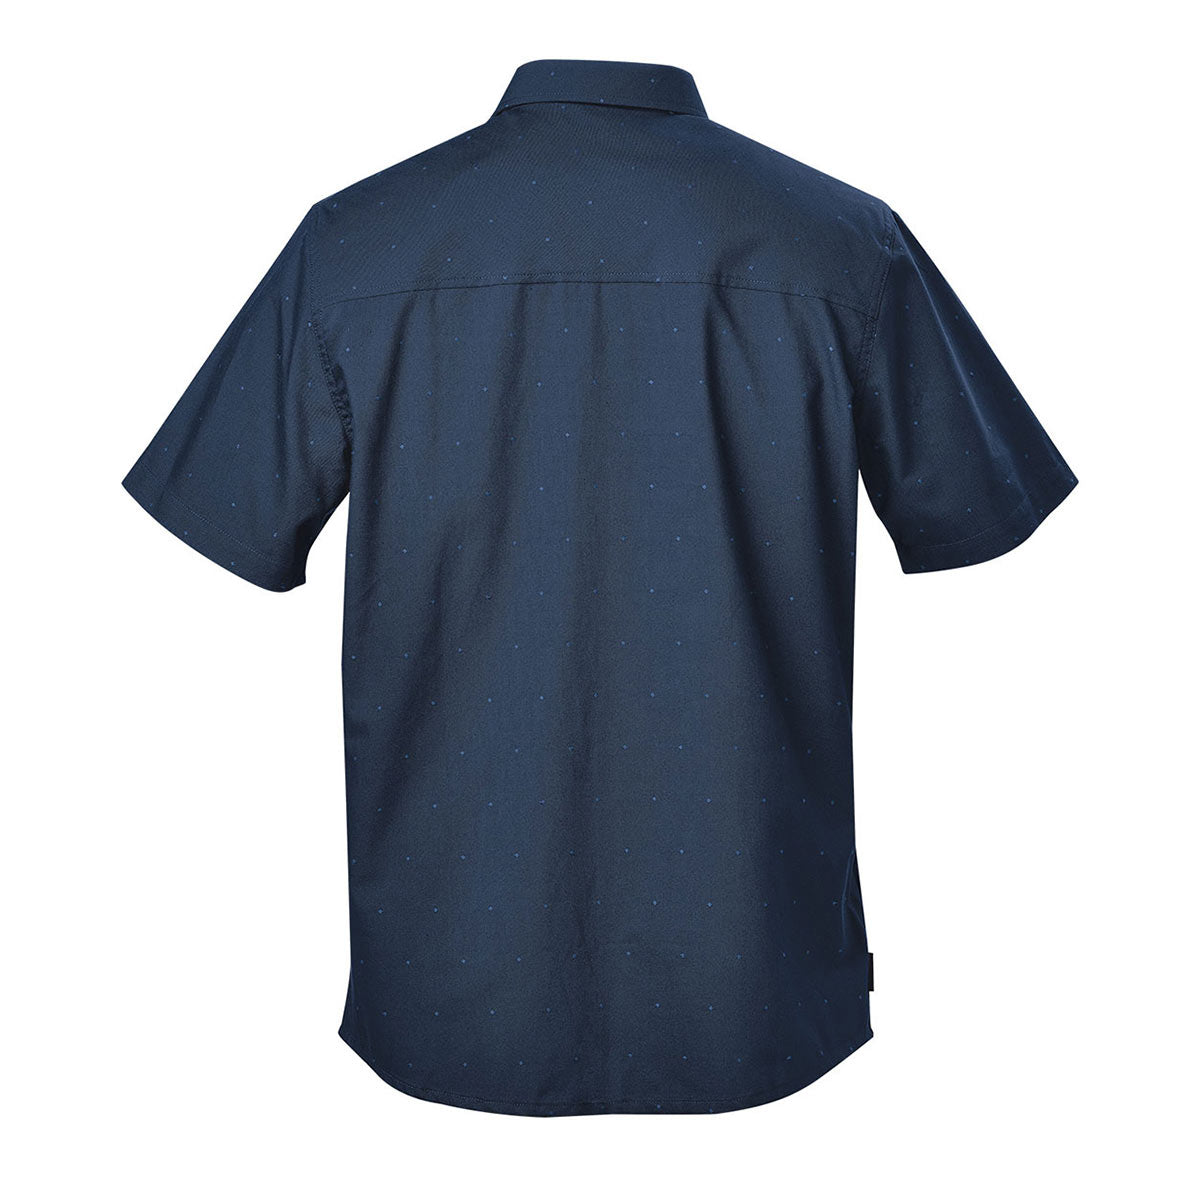 Men's Molokai S/S Shirt - SBR-1